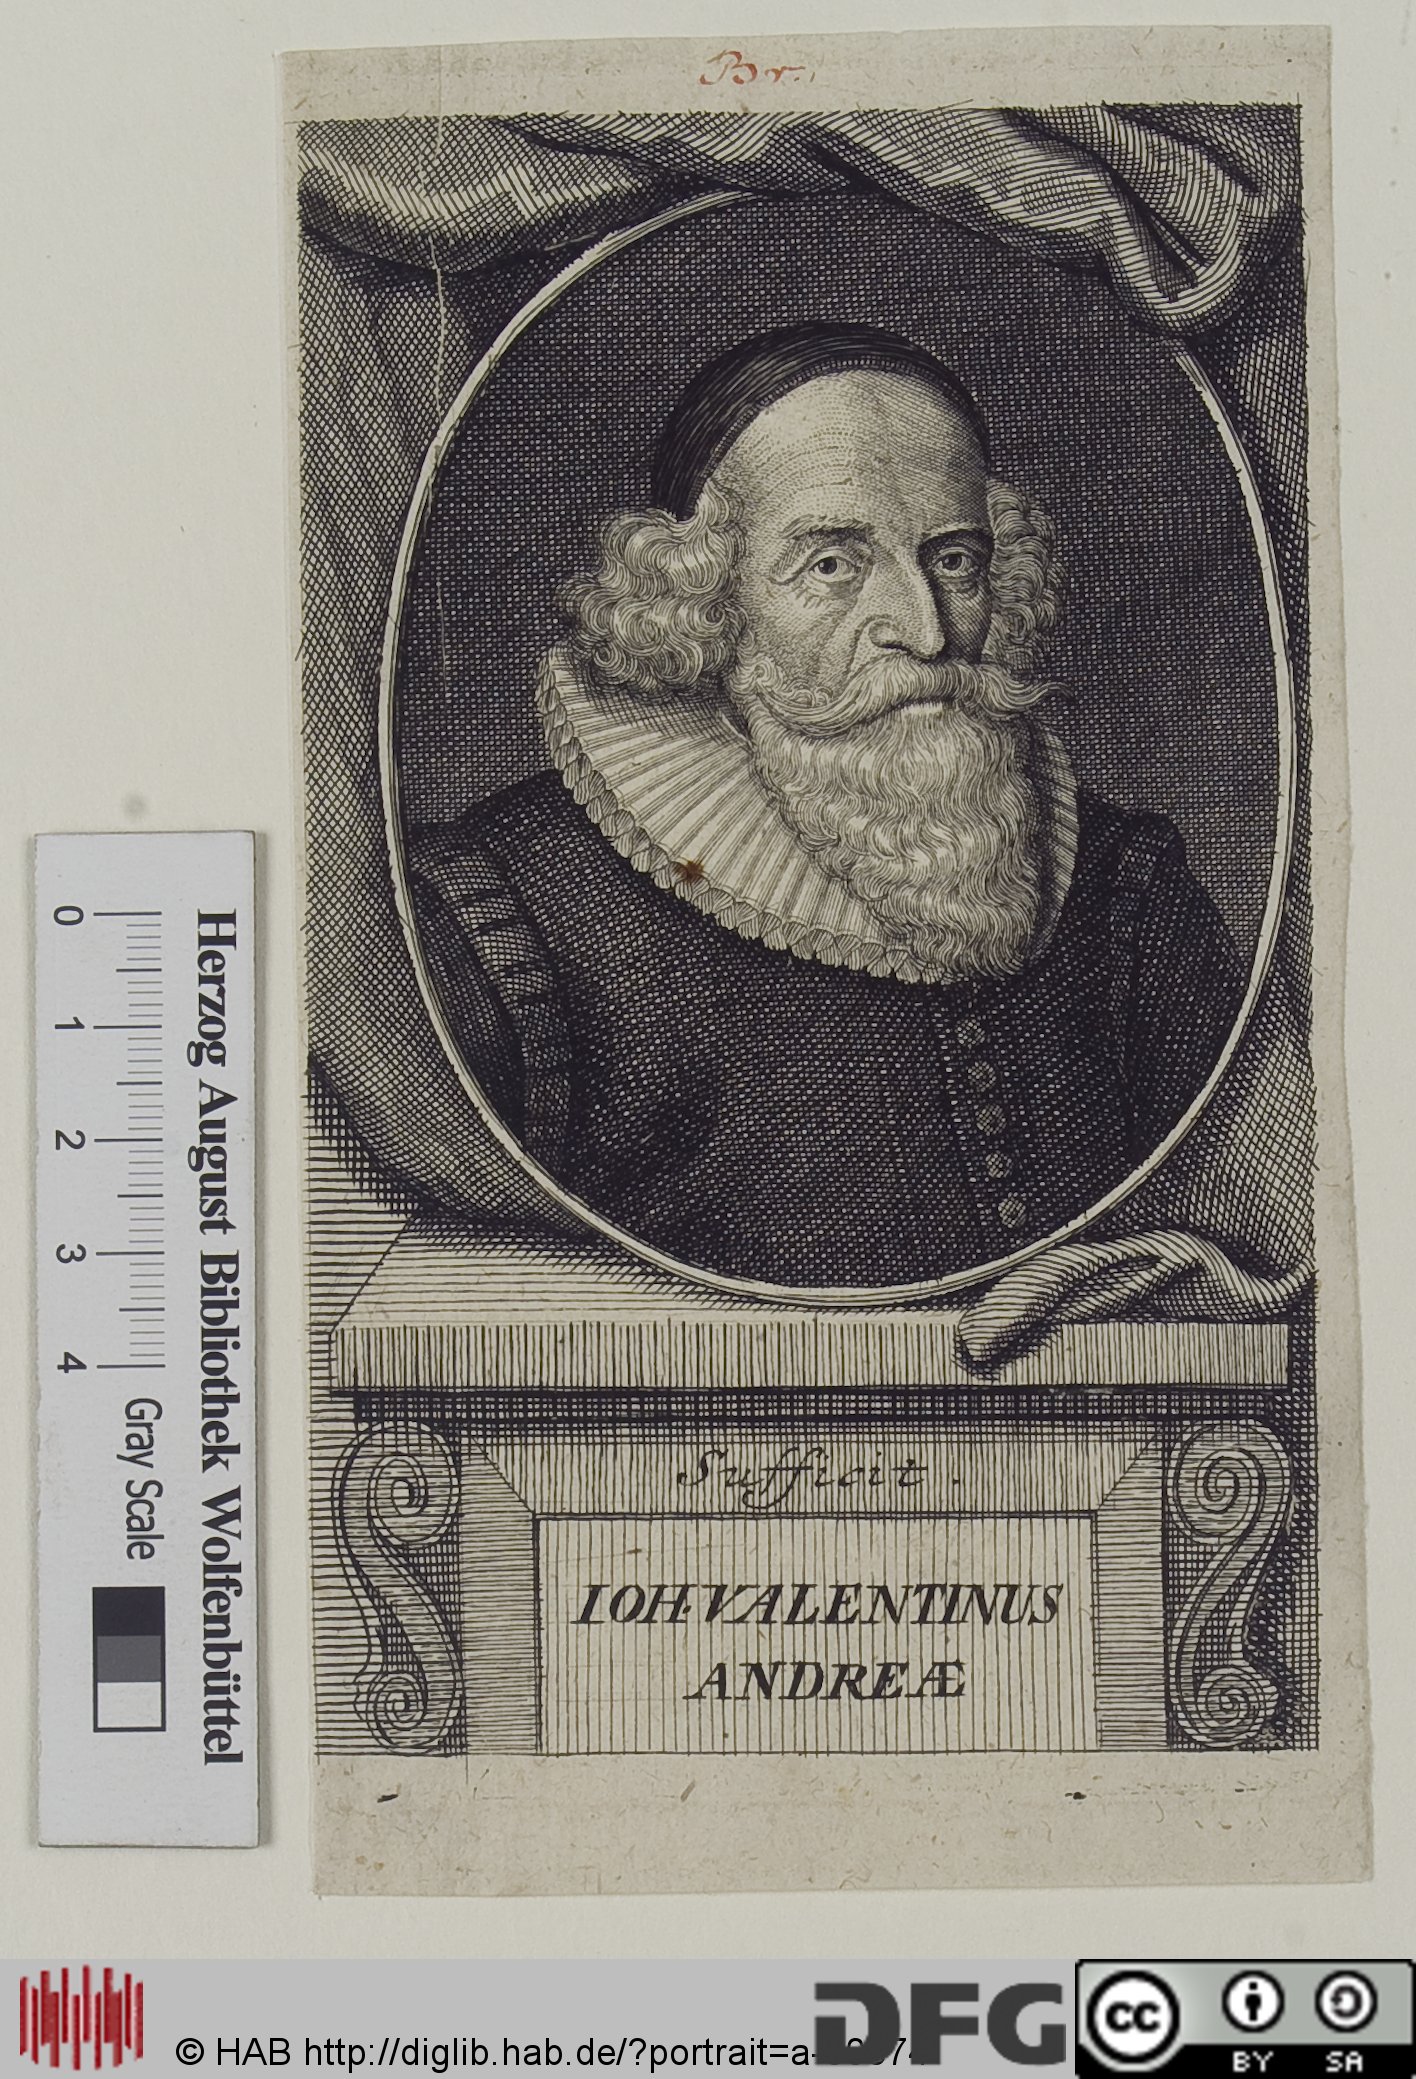 Kupferstich von Johann Valentin Andreae (Eintrag in der Portraitdatenbank)